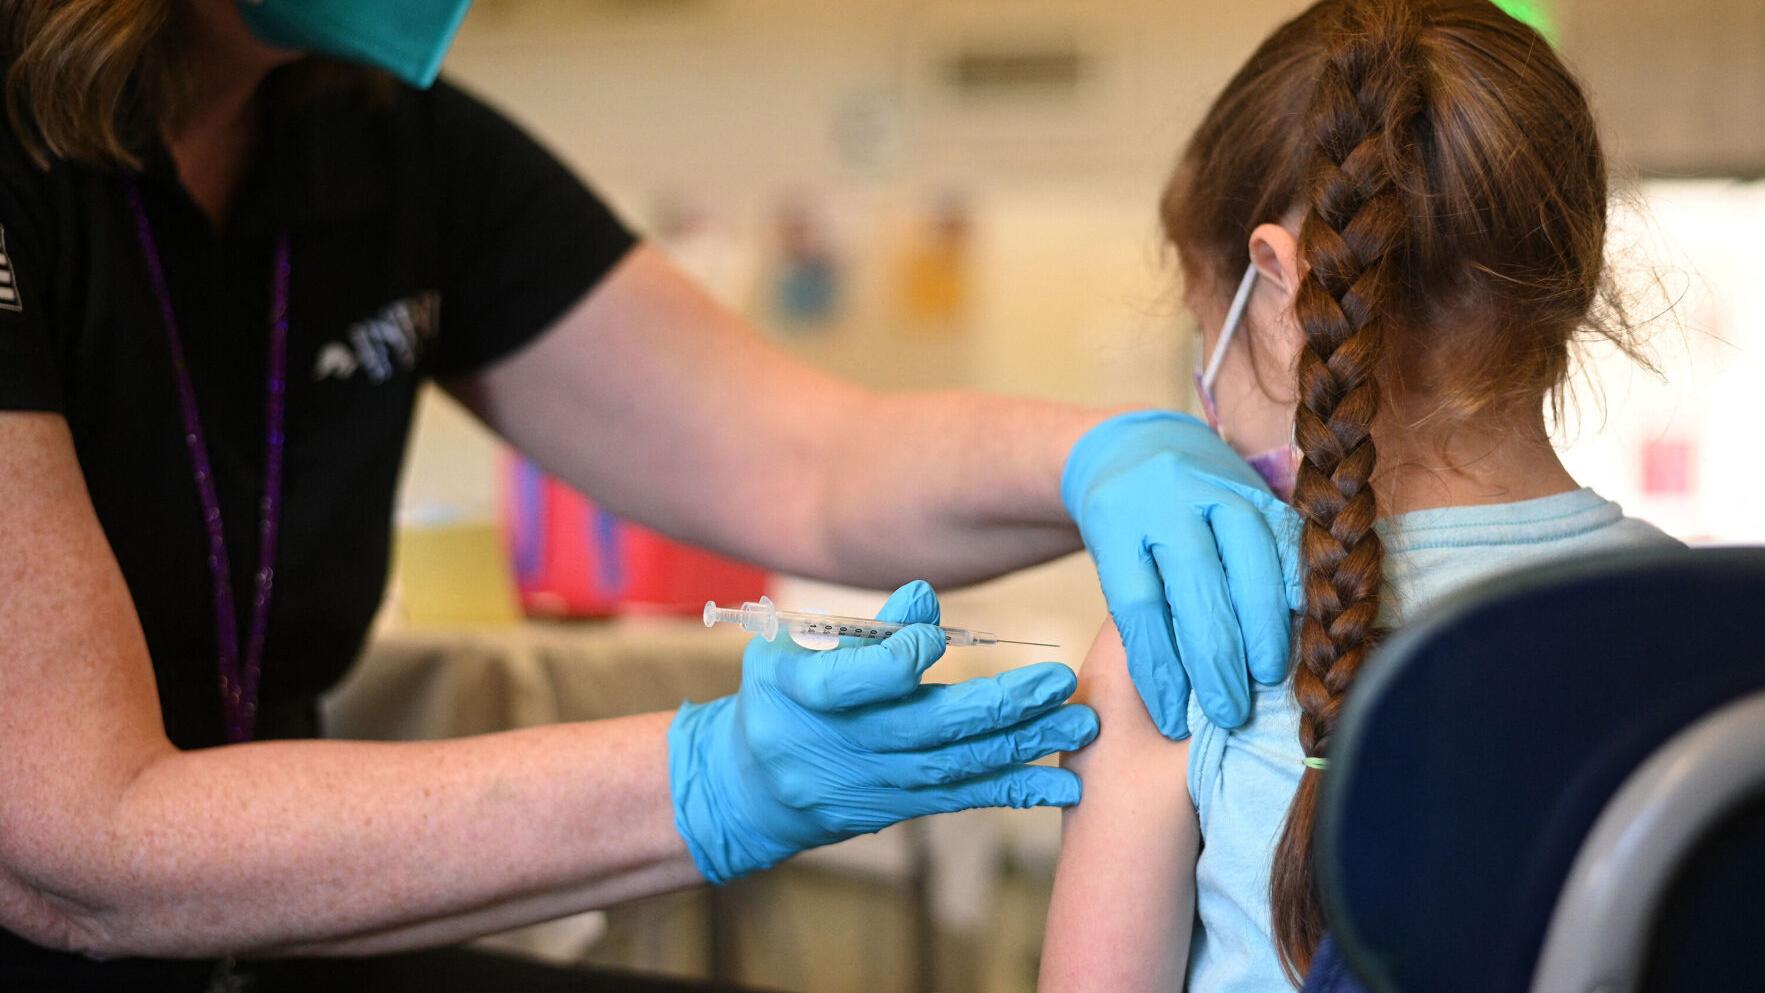 Arizona Legislature OKs ban on requiring COVID vax to attend school